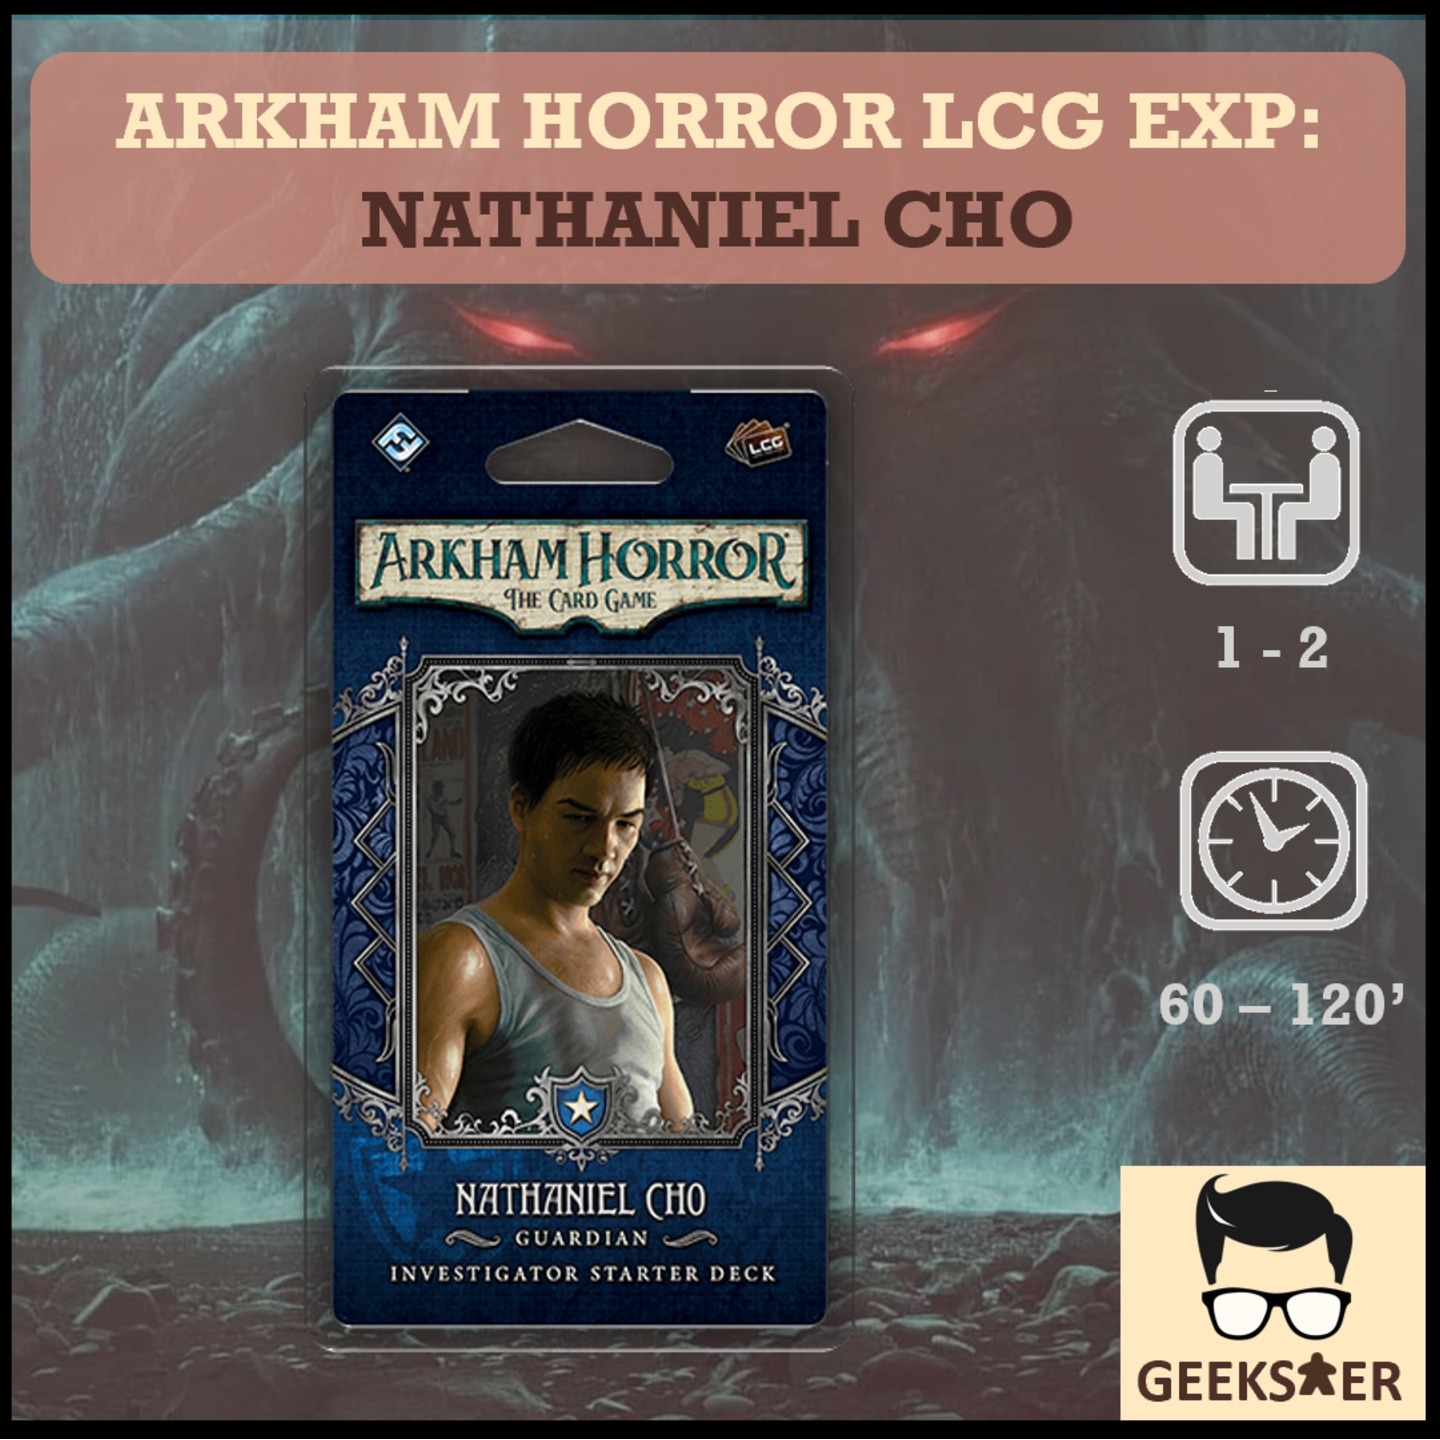 Arkham Horror LCG Exp - Nathaniel Cho Investigator Starter Deck